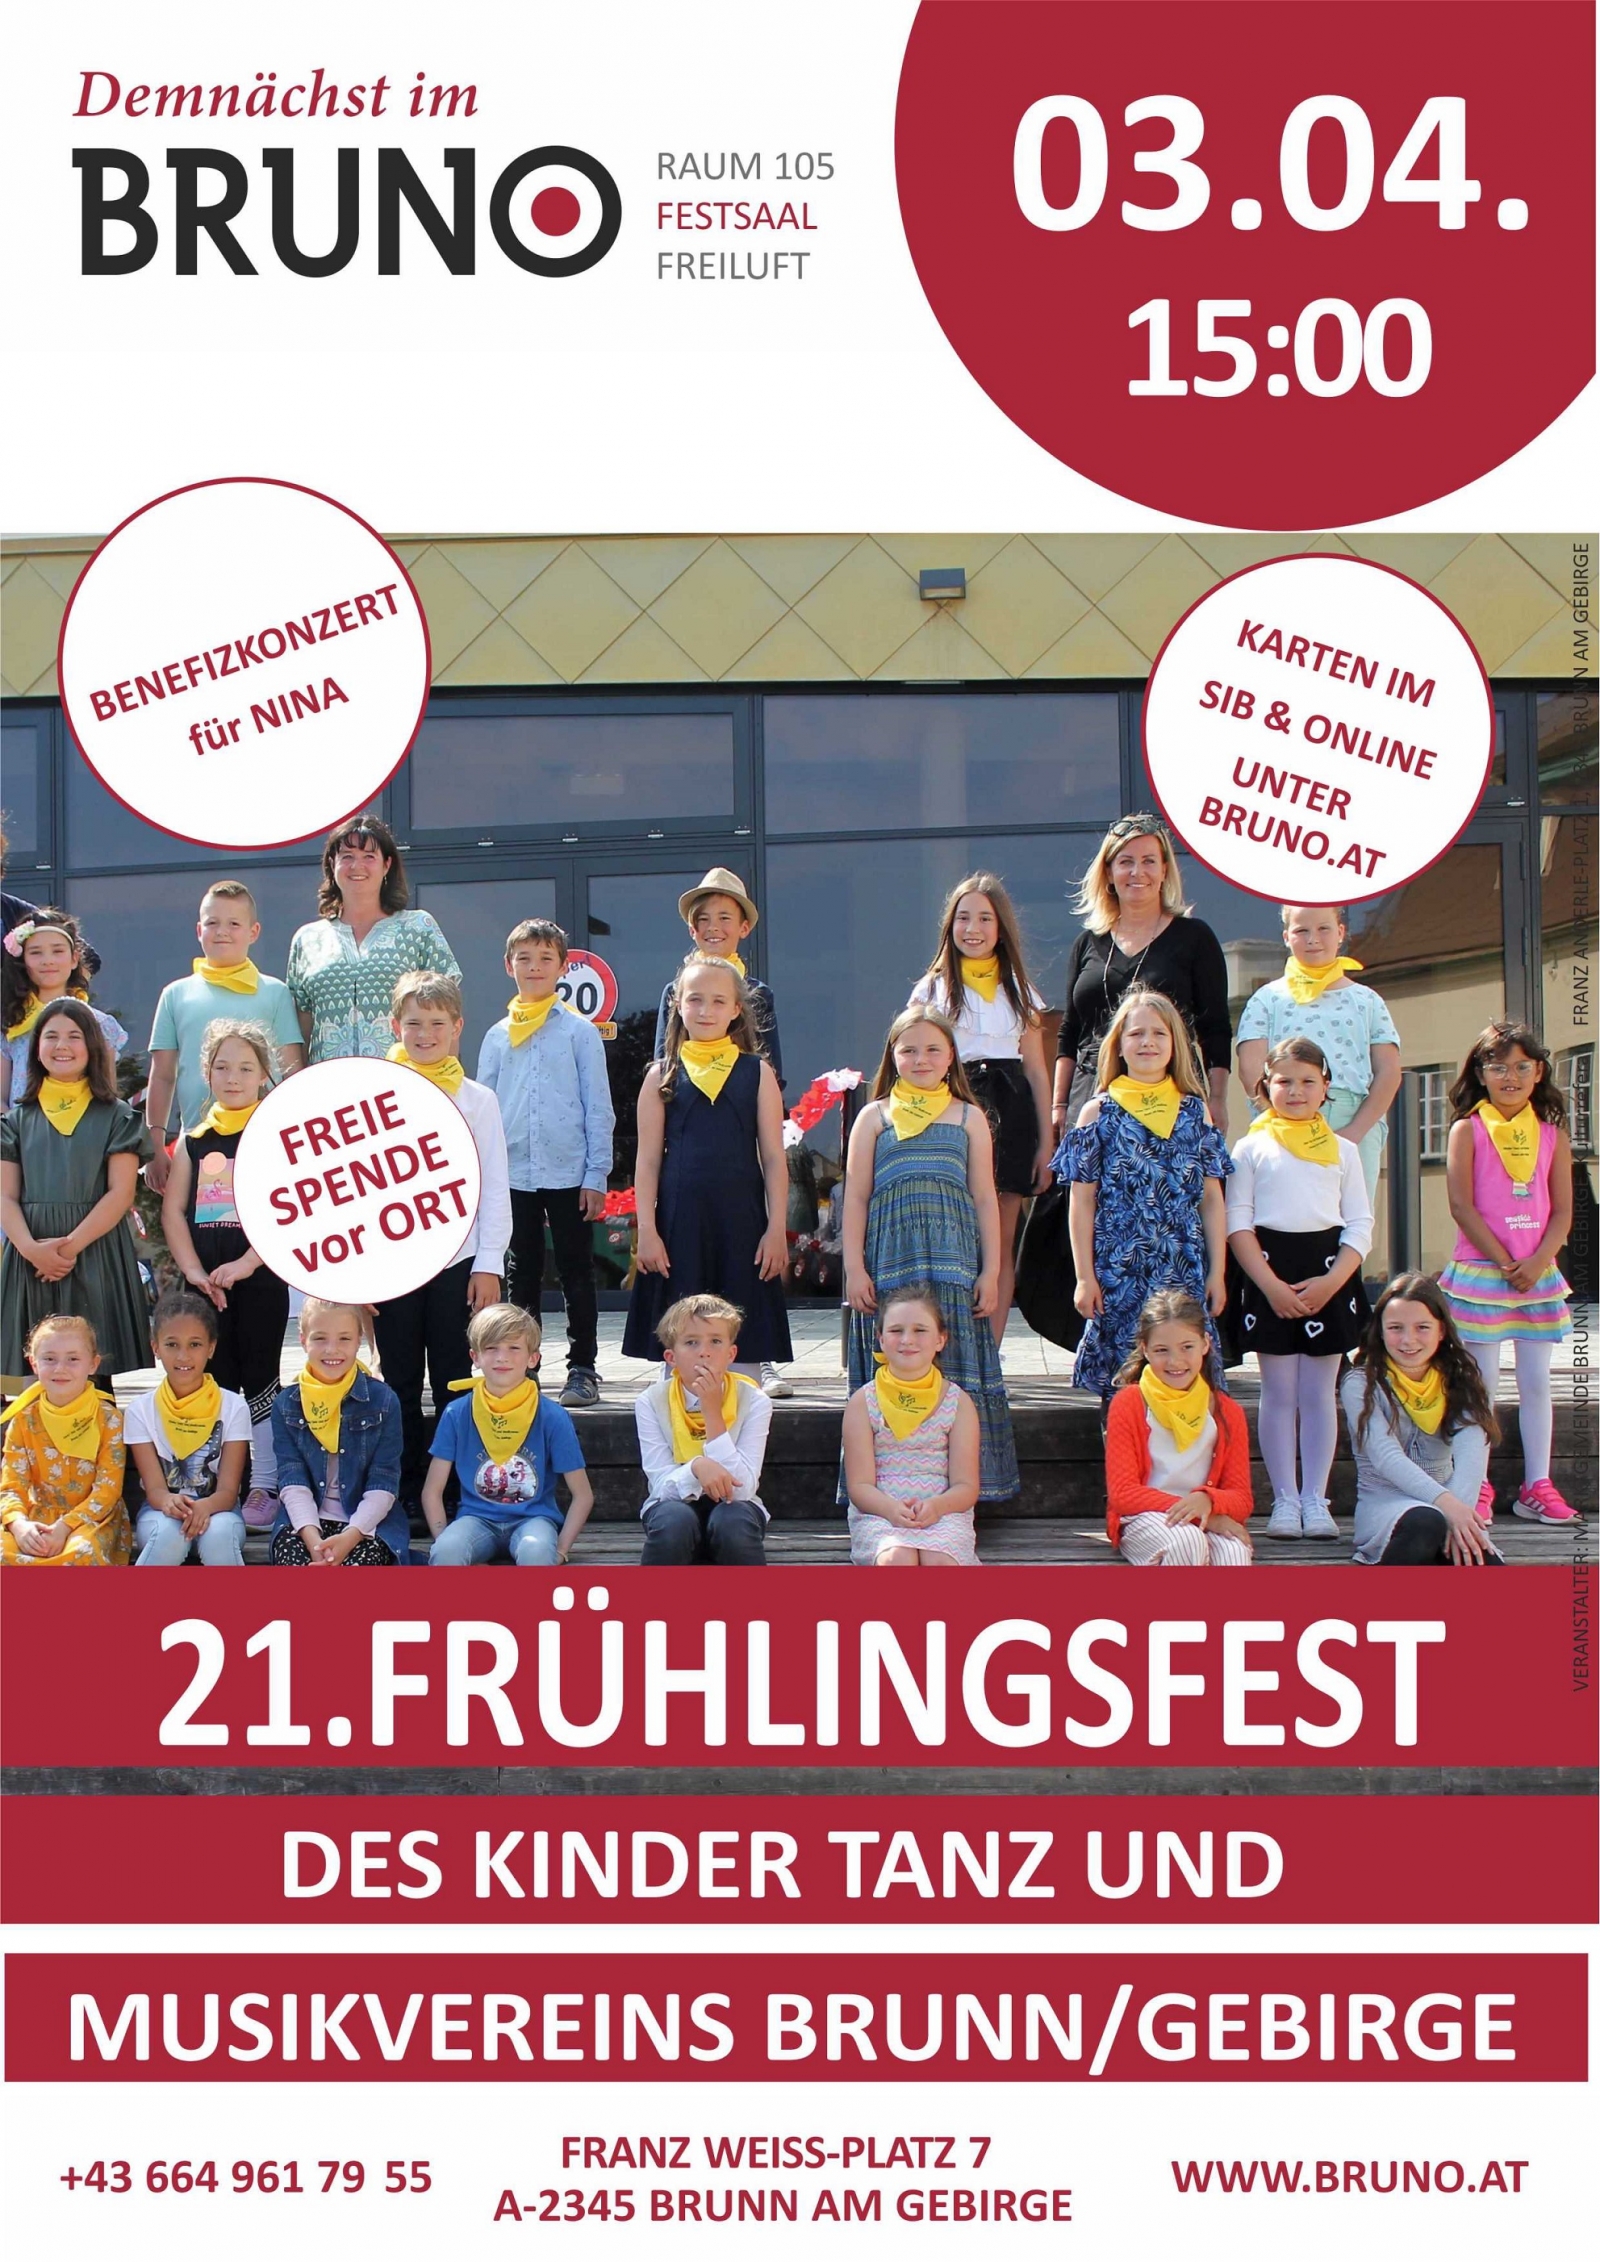 Frühlingsfest des Kinder Tanz und Musikvereins Brunn am Gebirge